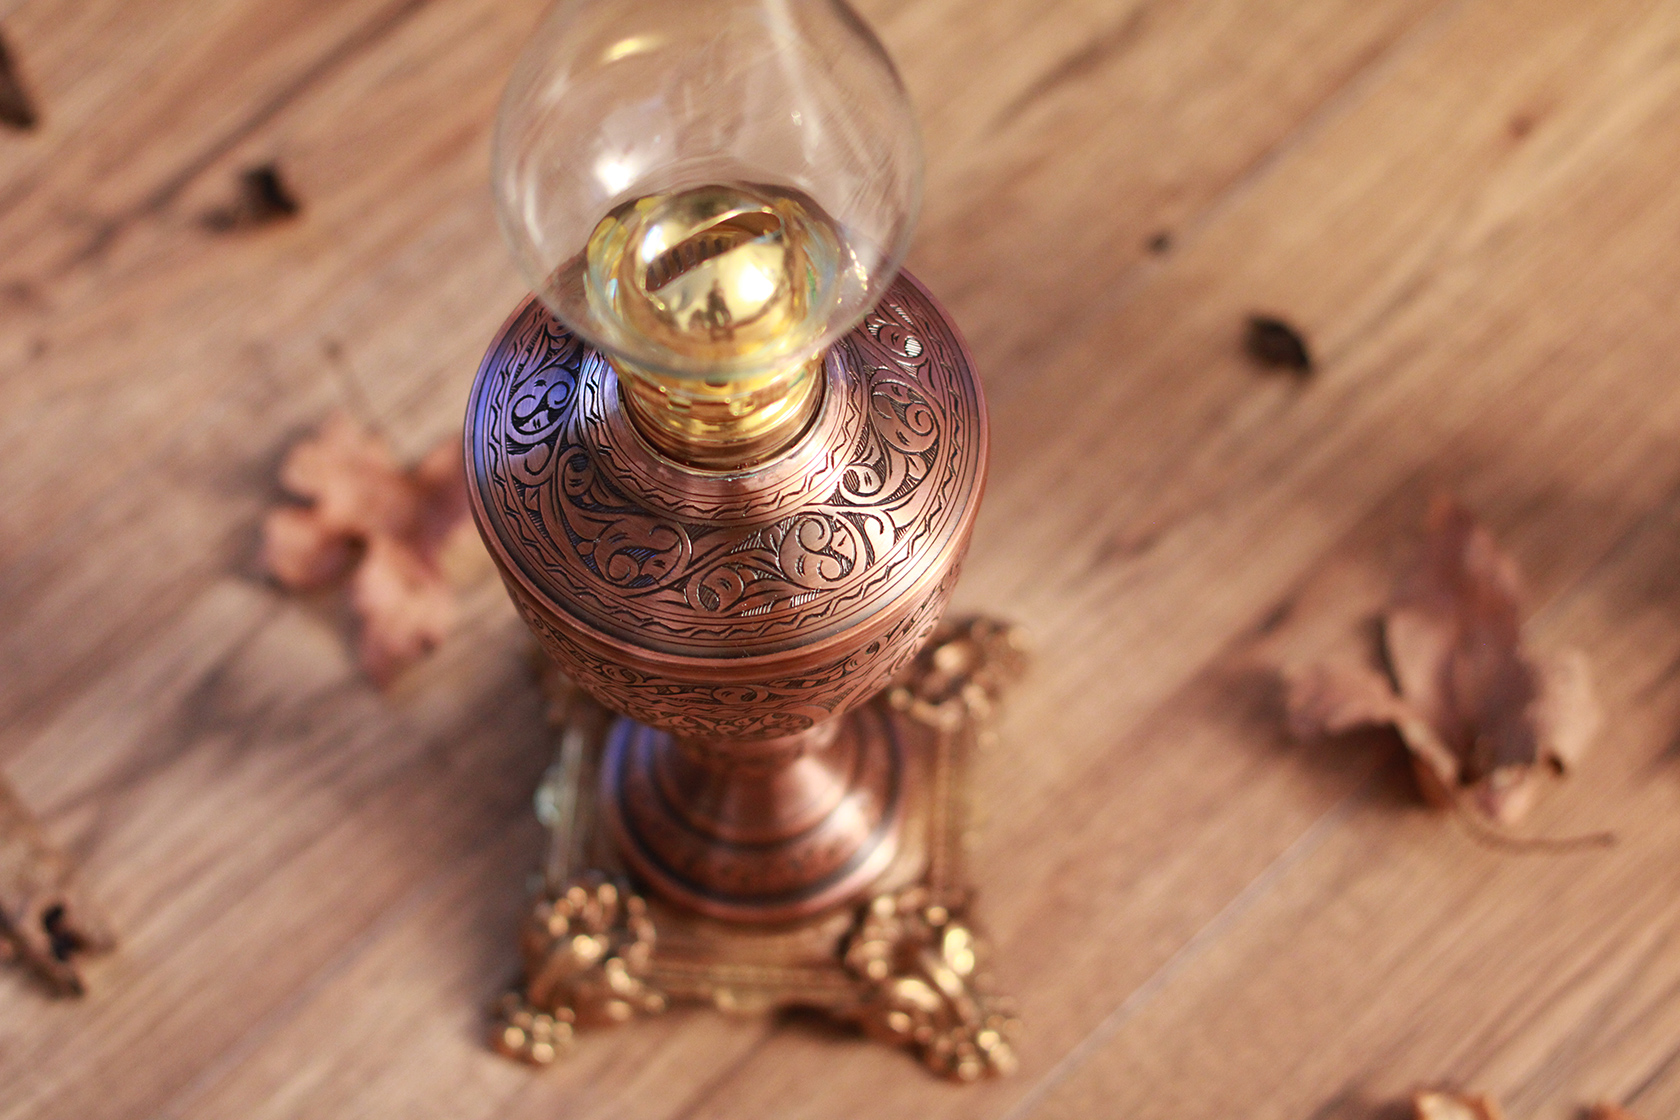 Copper Oil Lamp, Kerosene Lamp